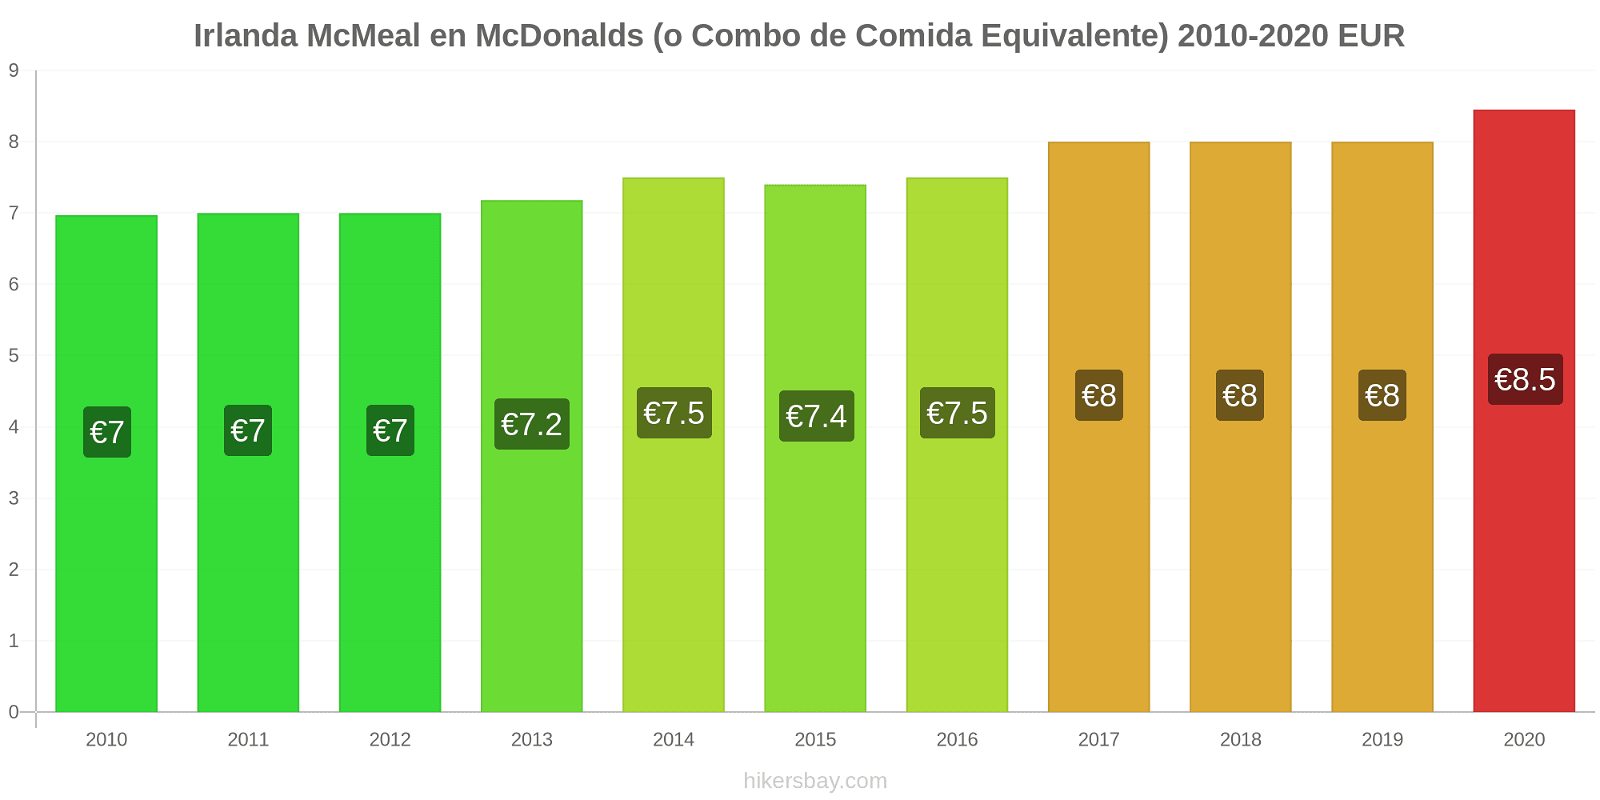 Irlanda cambios de precios McMeal en McDonalds (o menú equivalente) hikersbay.com